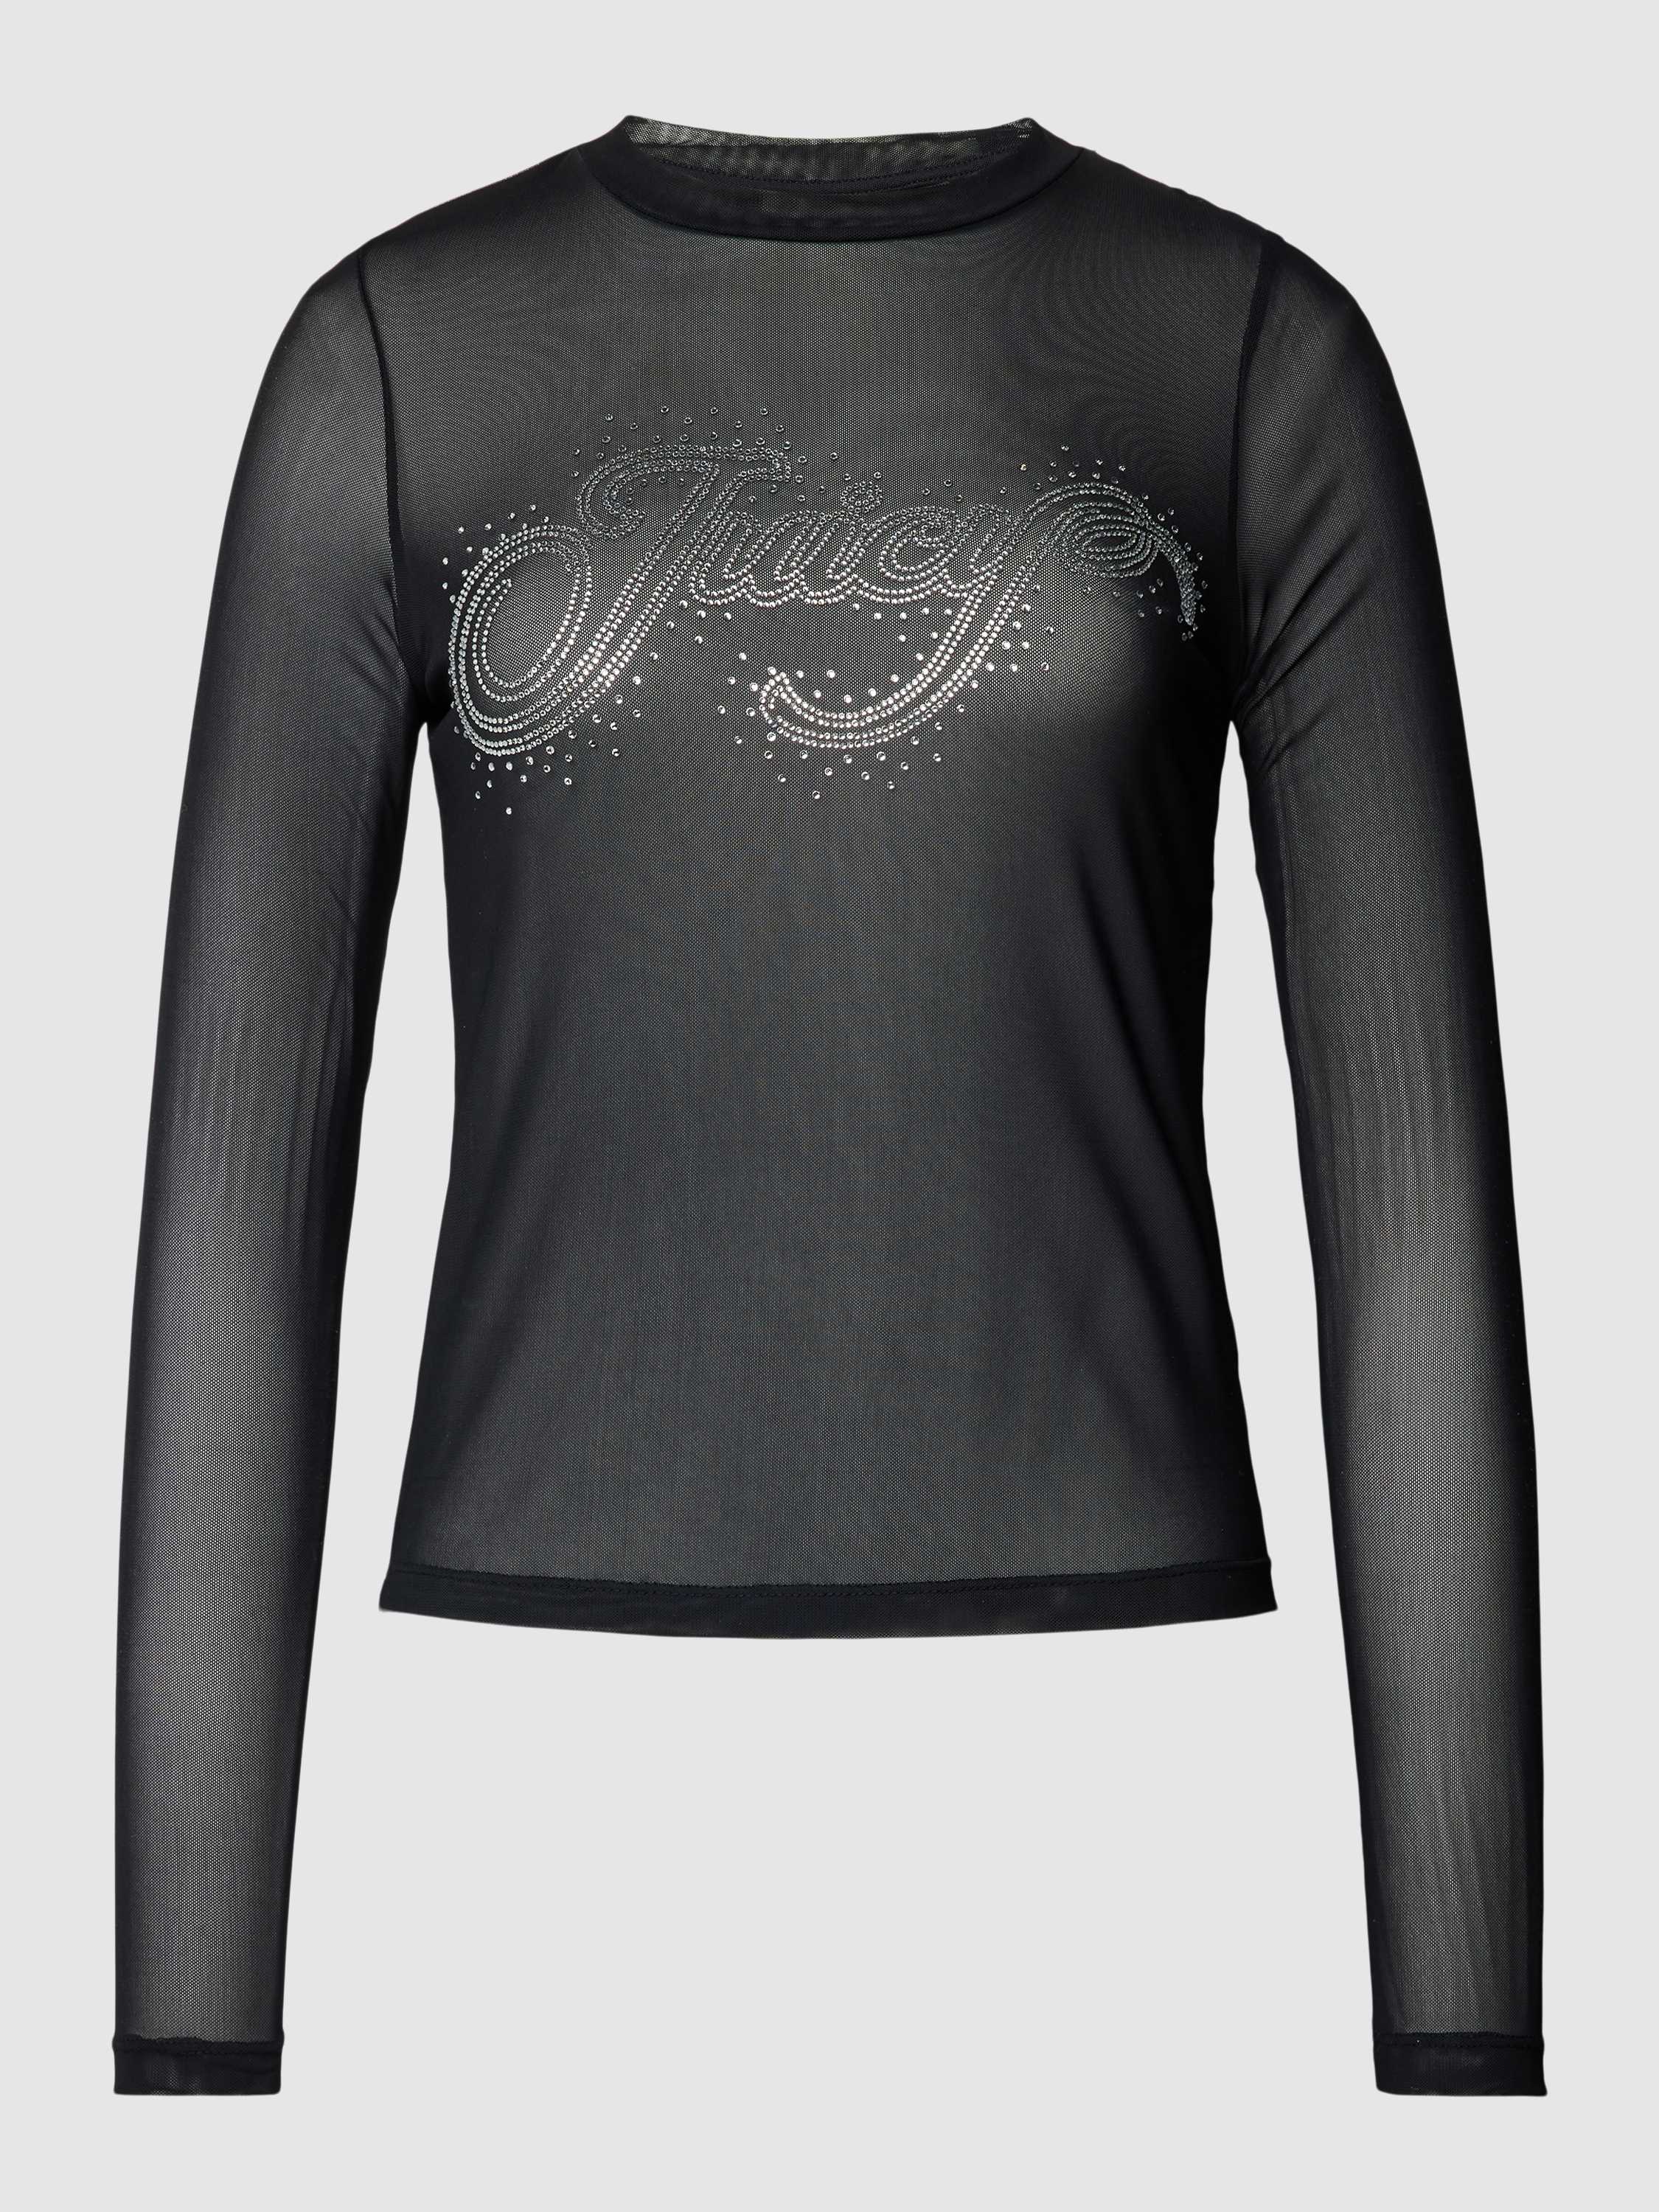 Juicy Couture Semi-transparant shirt met lange mouwen en labelopschrift van strass-steentjes model 'RAHEEM'